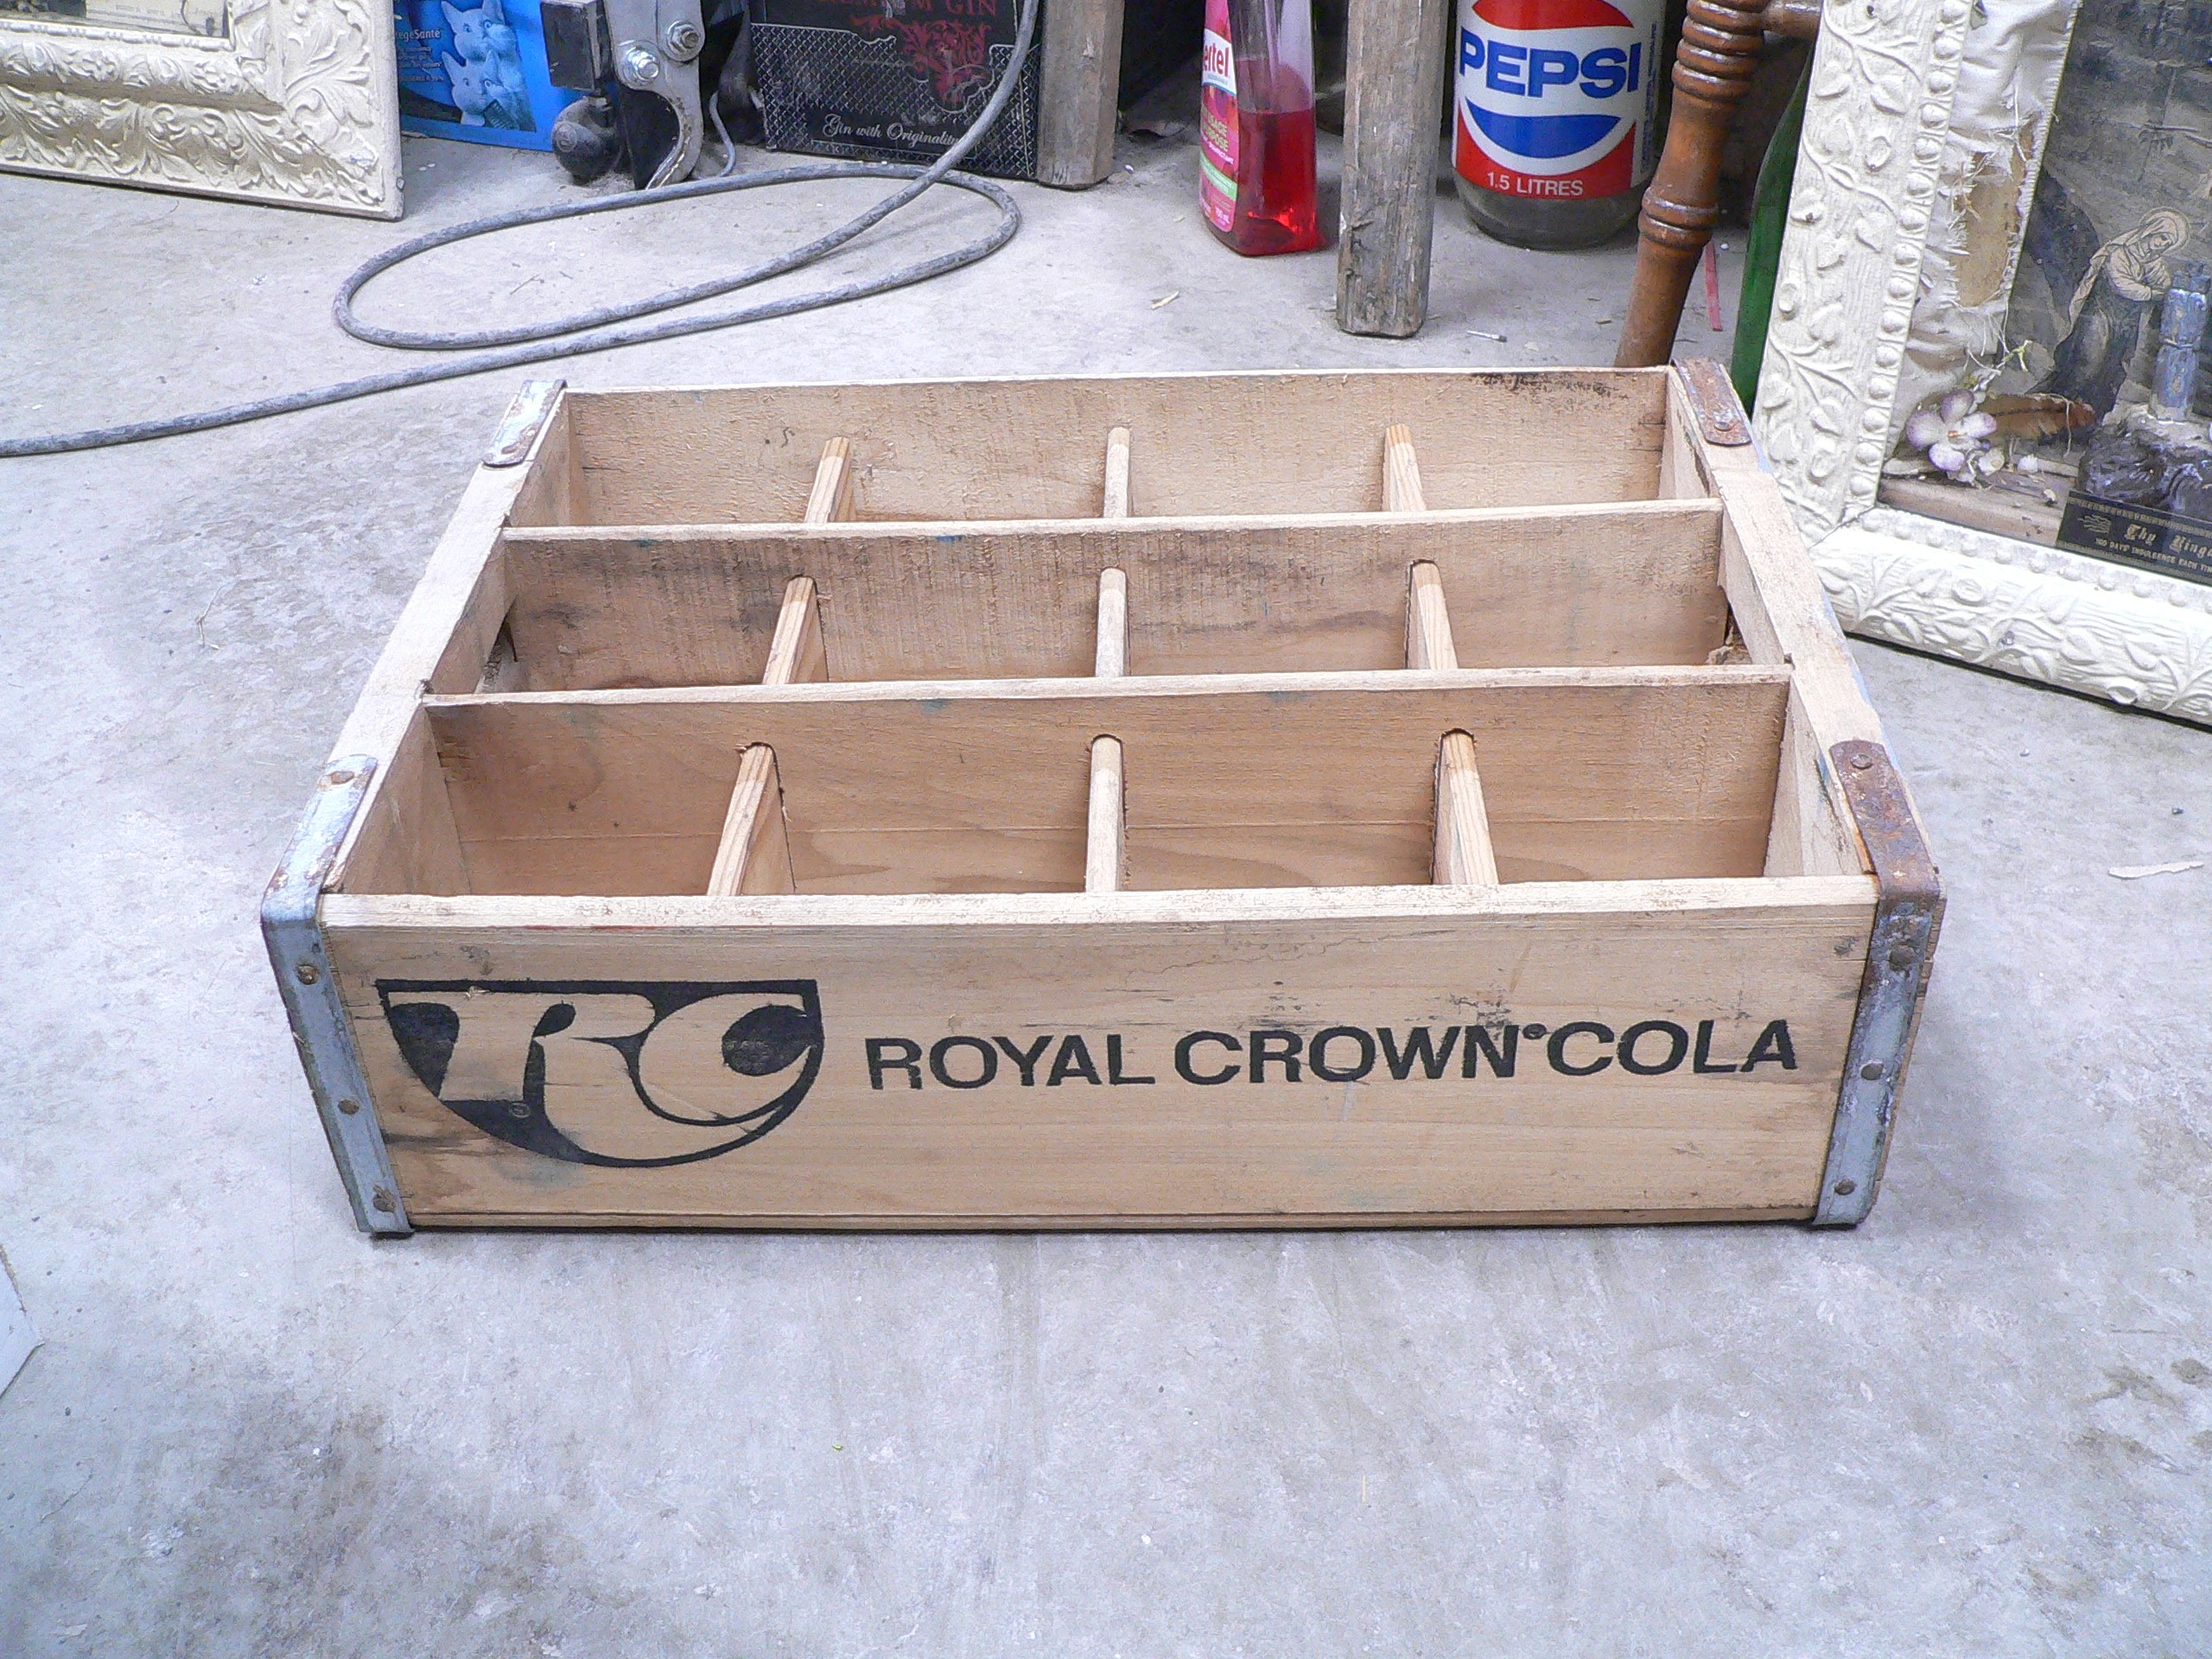 Caisse royal crown cola # 9943.2 